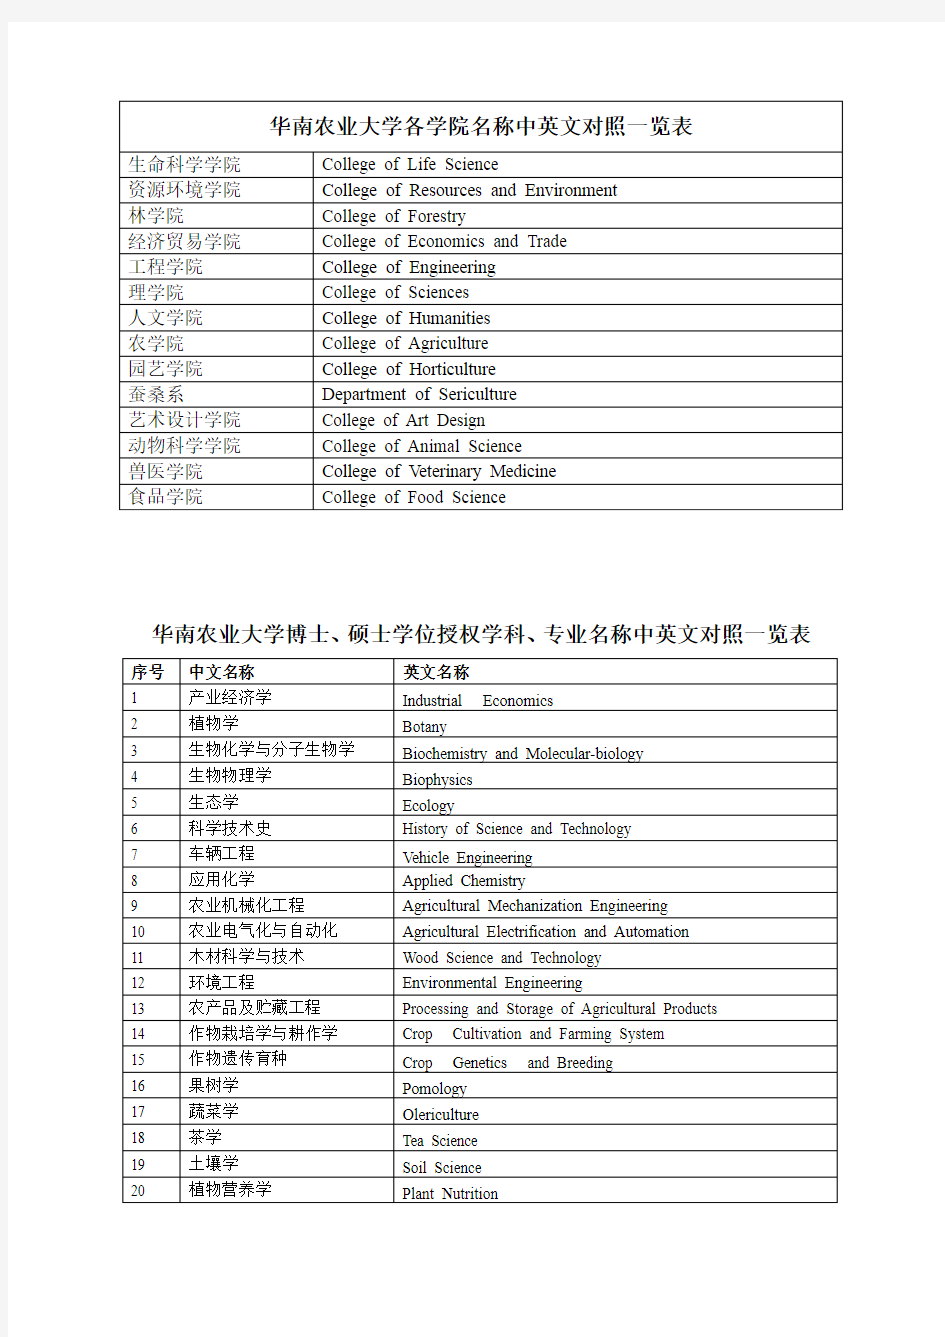 华南农业大学各学院名称中英文对照一览表